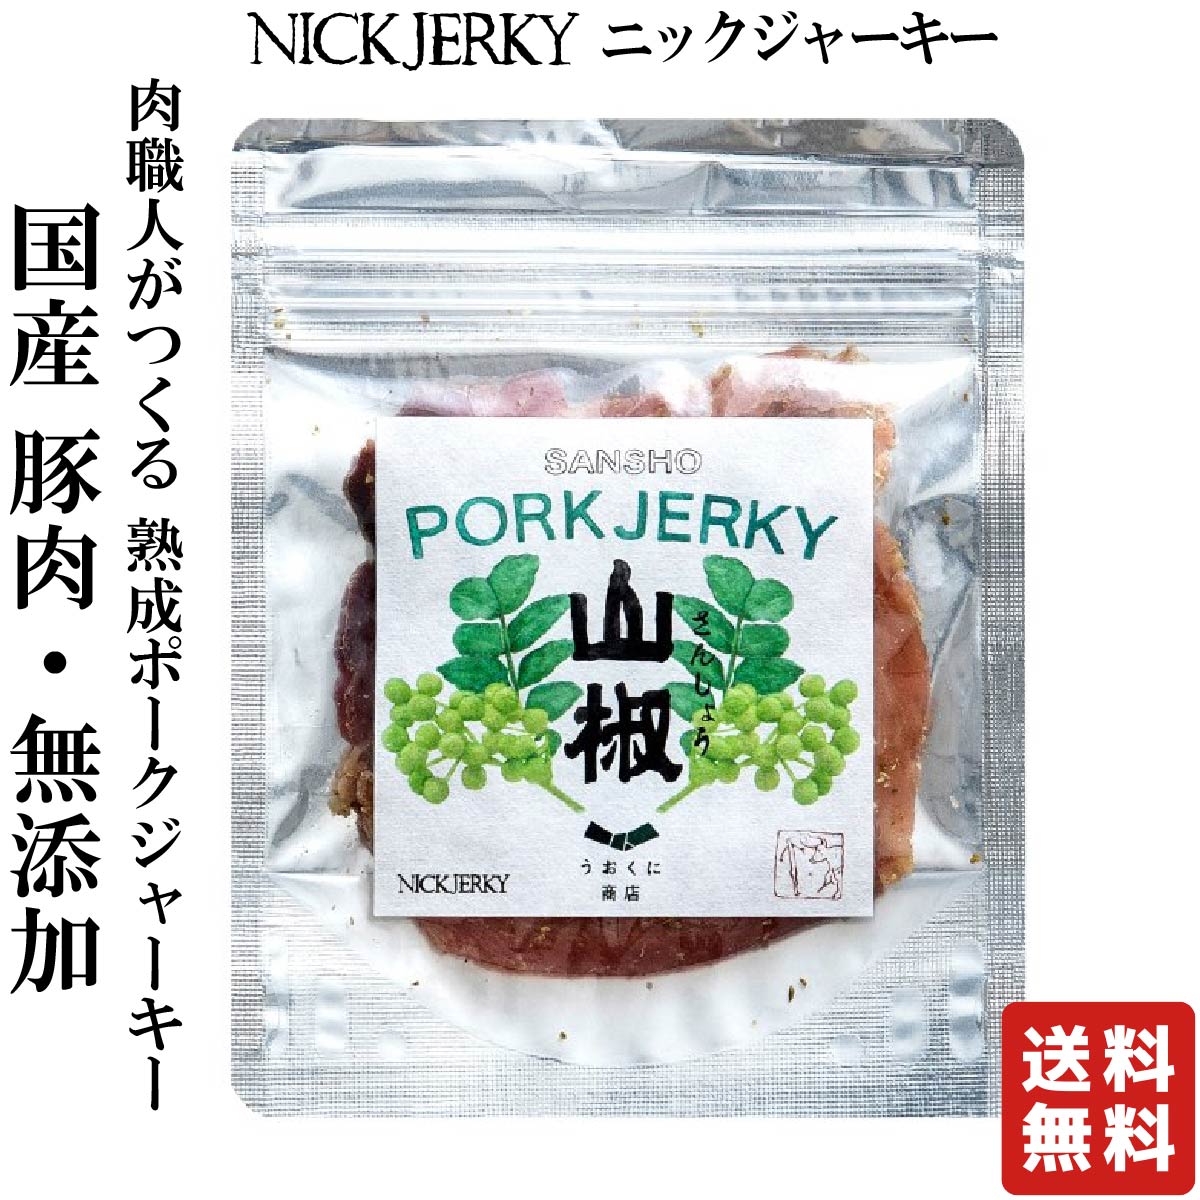 NICKJERKY 山椒ポークジャーキー 12g (1袋) ニックジャーキー 上質な「うおくに商店」の山椒使用 国産 国内産 豚肉ジャーキー